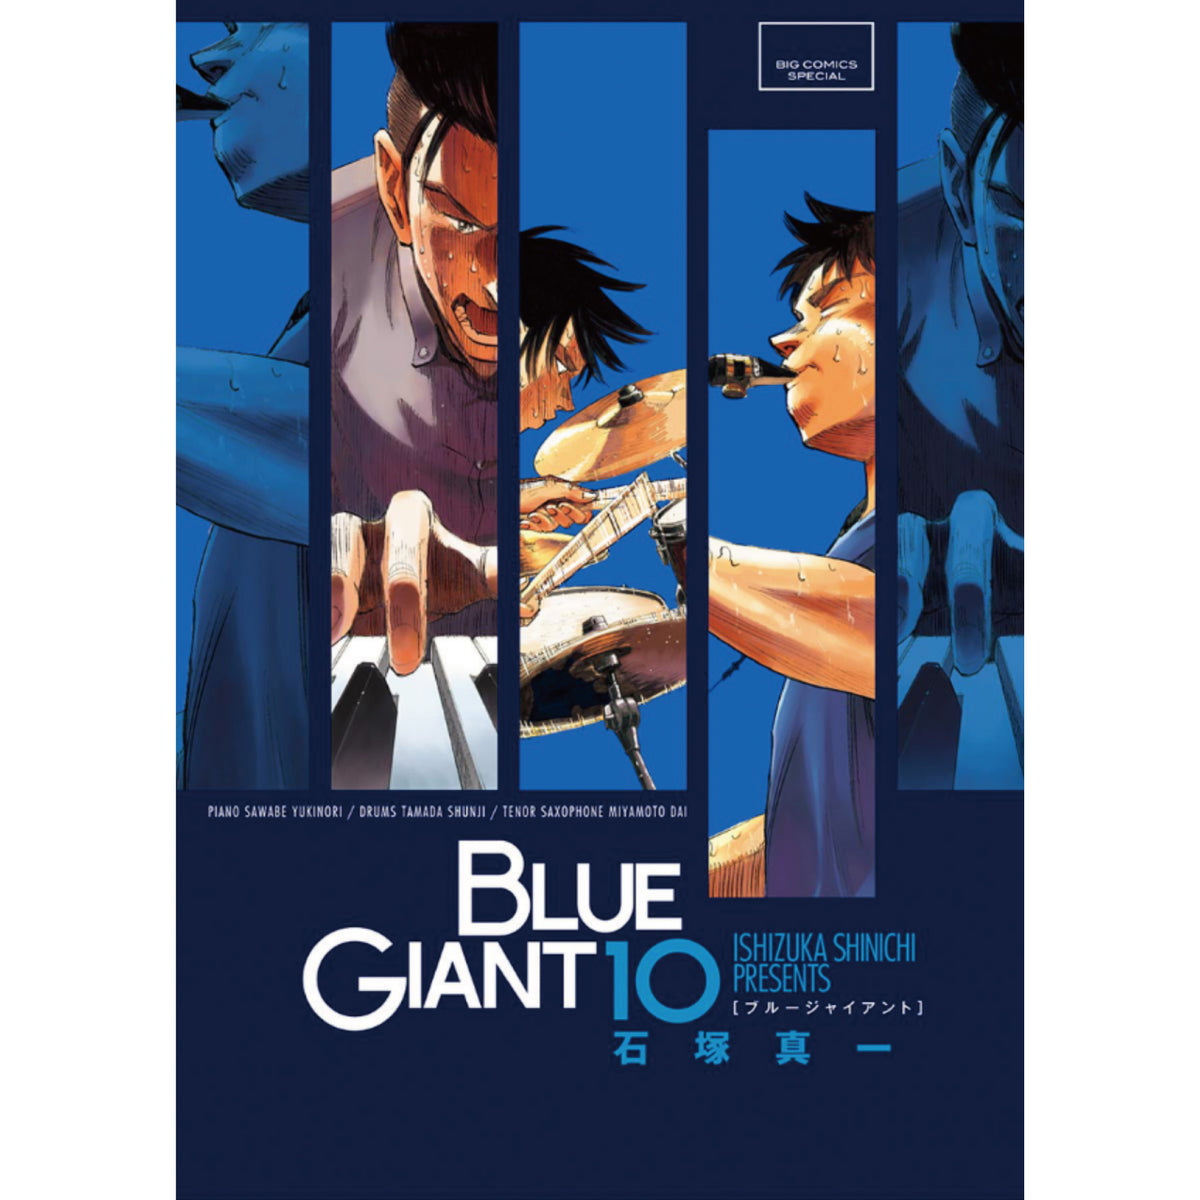 石塚真一 BLUE GIANT (第1シリーズ) 全10巻セット - 青年漫画